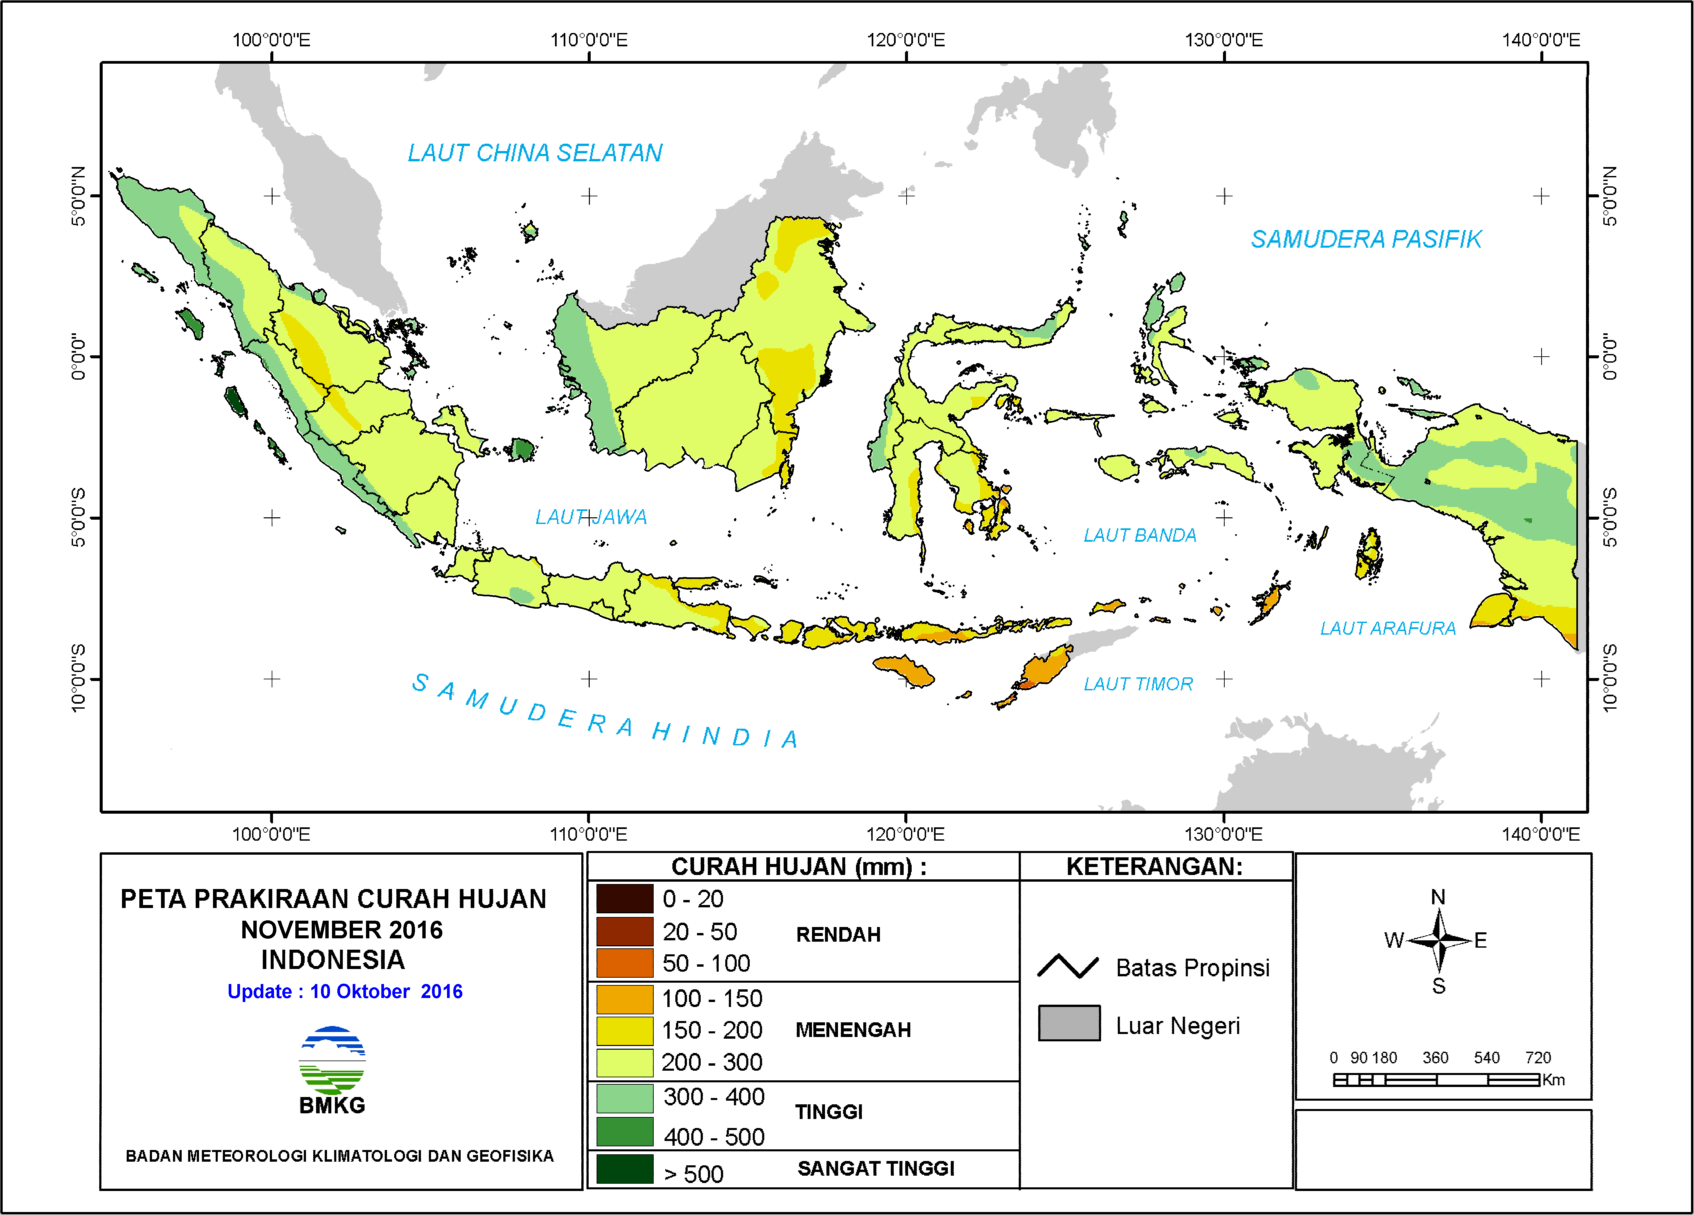 Bagaimana prakiraan kondisi curah hujan November 2016? Curah hujan di sebagian besar wilayah Indonesia diperkirakan berada pada level menengah.